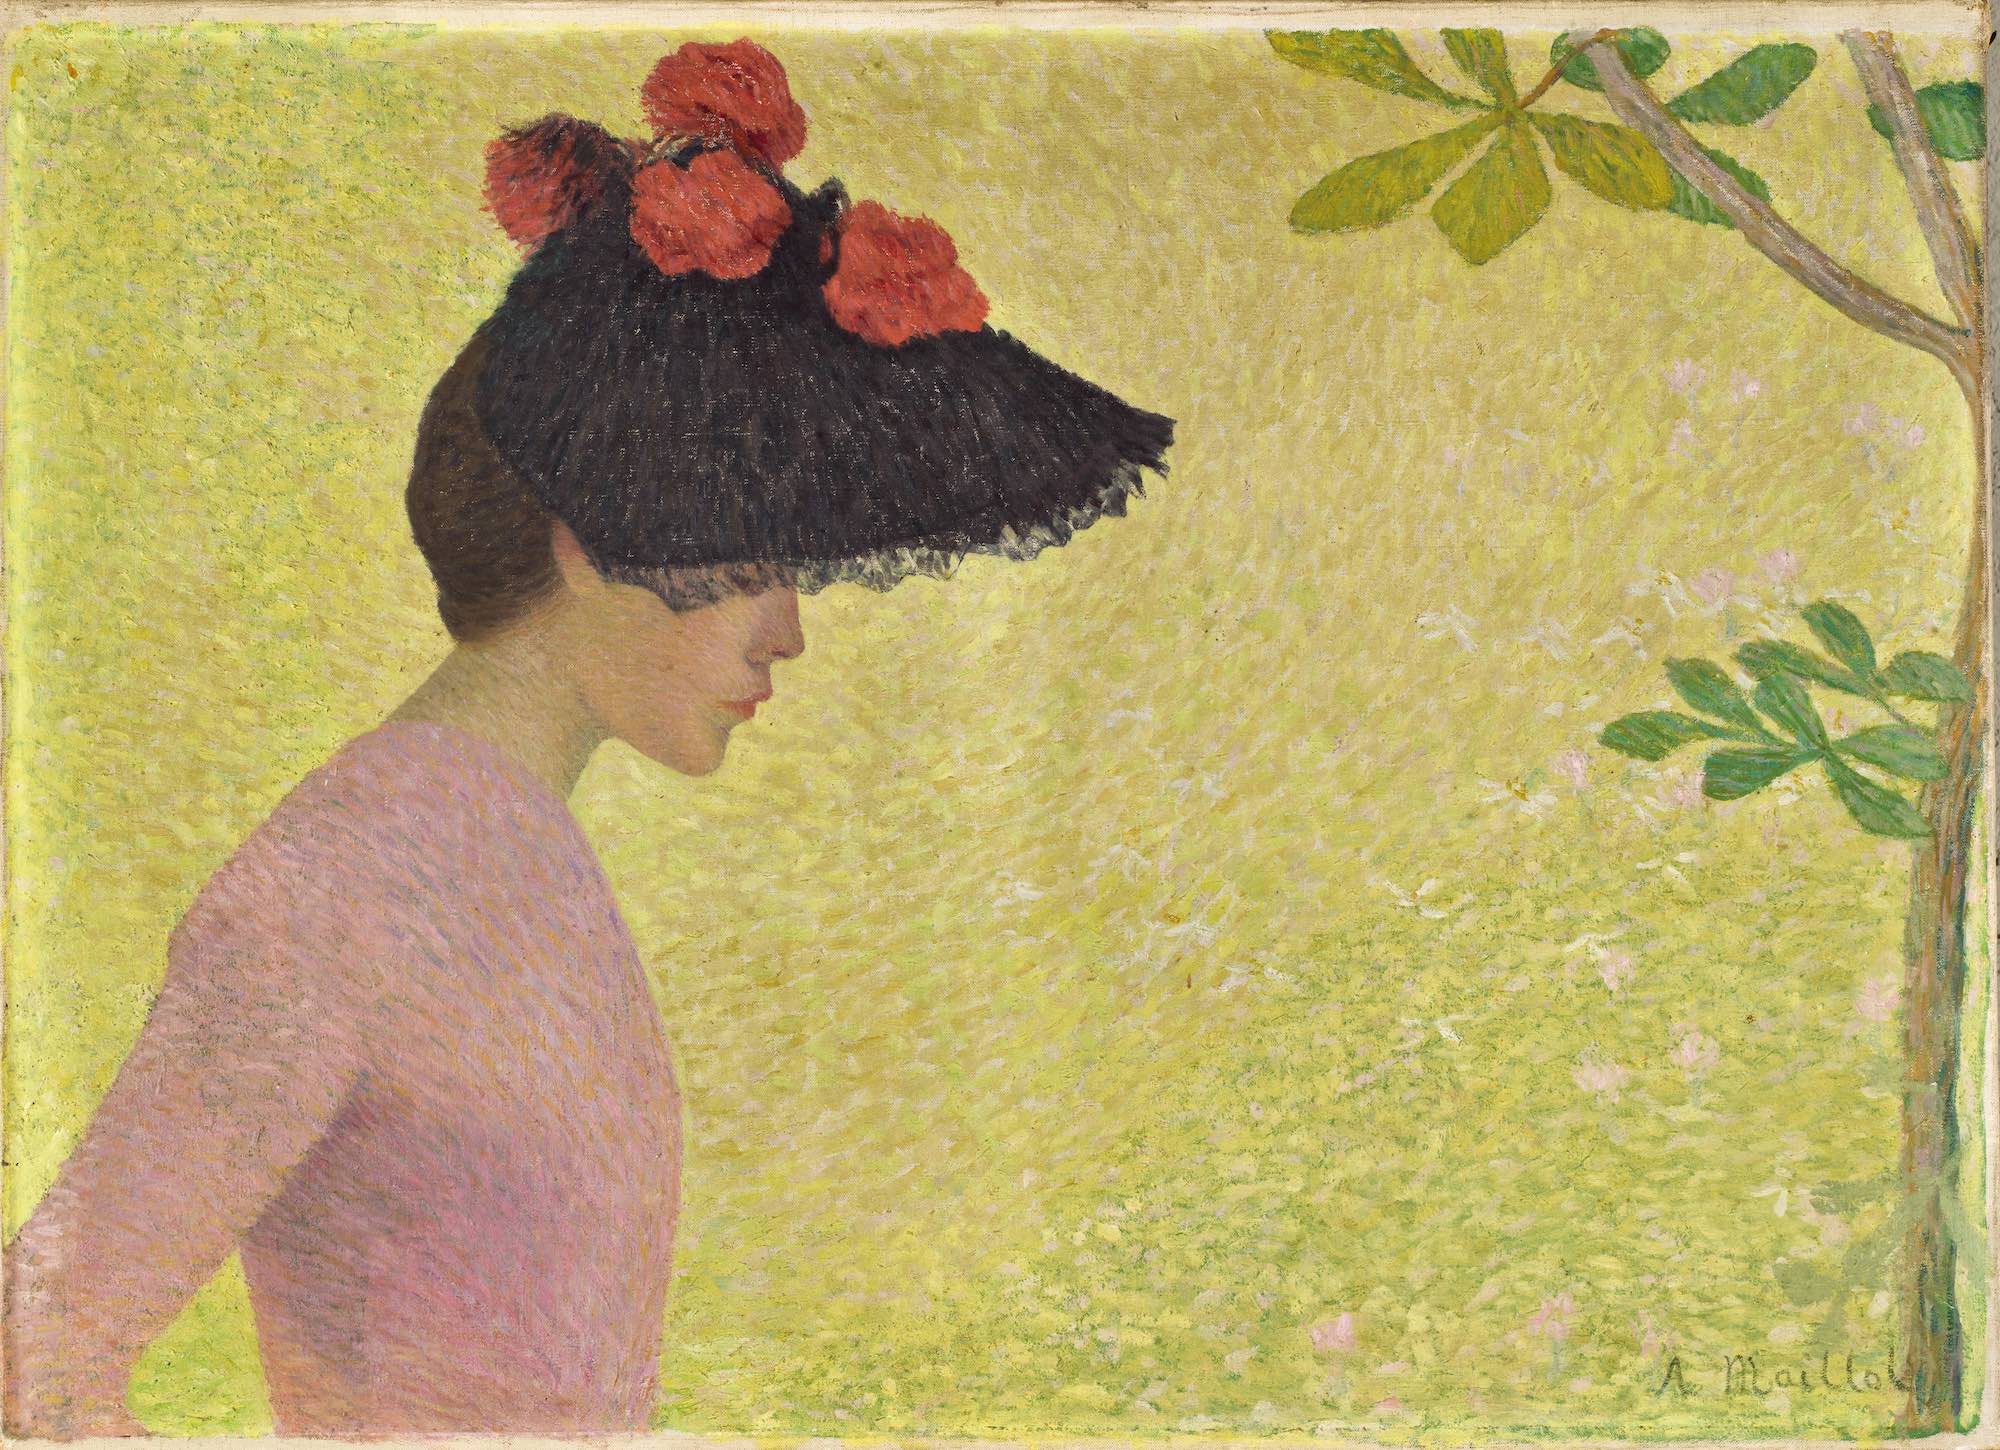 Aristide Maillol (1861-1944), Profil de jeune fille (portrait de Mlle Faraill ?), vers 1890. Huile sur toile, 73,5 x 103 cm. Paris, musée d’Orsay, en dépôt au musée d’art Hyacinthe-Rigaud, Perpignan. Photo service de presse. © Musée d’Orsay – P. Schmidt